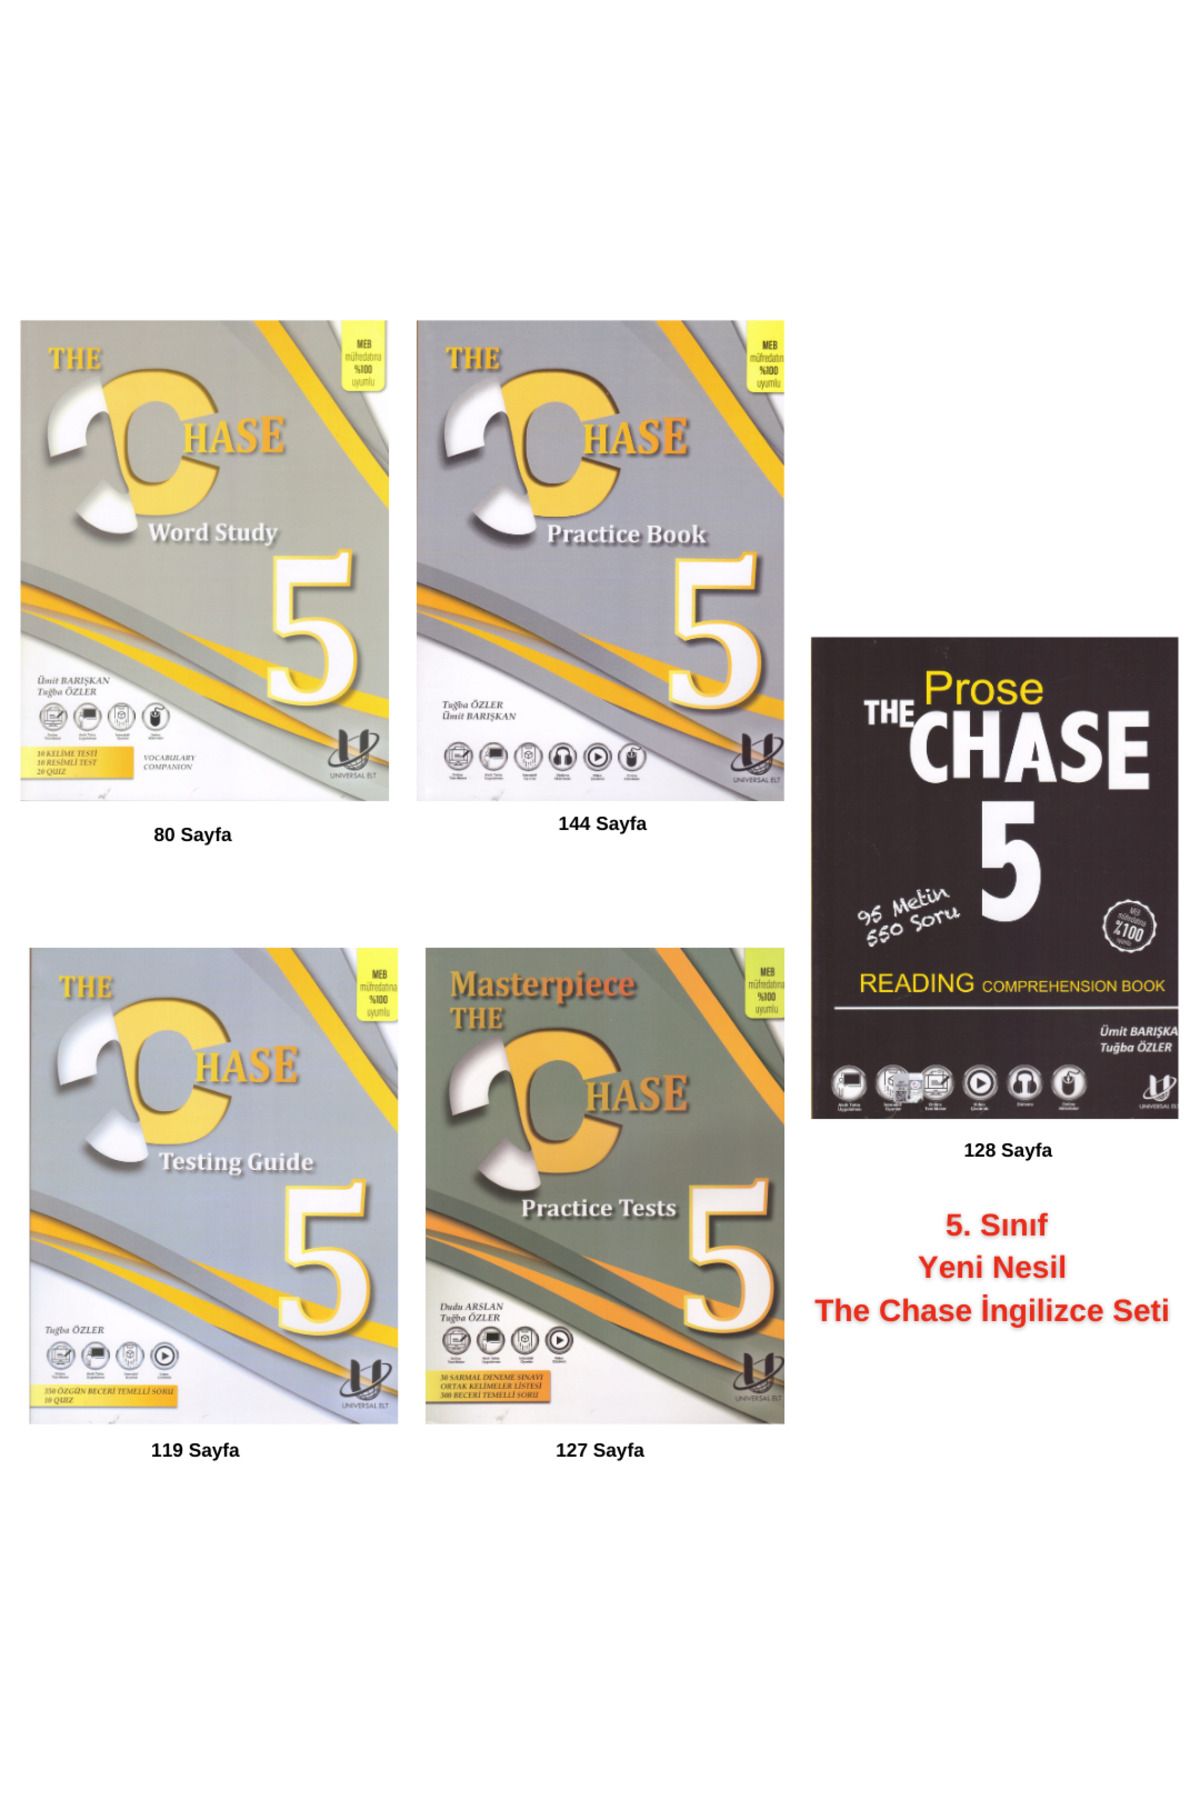 Universal 5. Sınıf Yeni Nesil The Chase İngilizce Seti